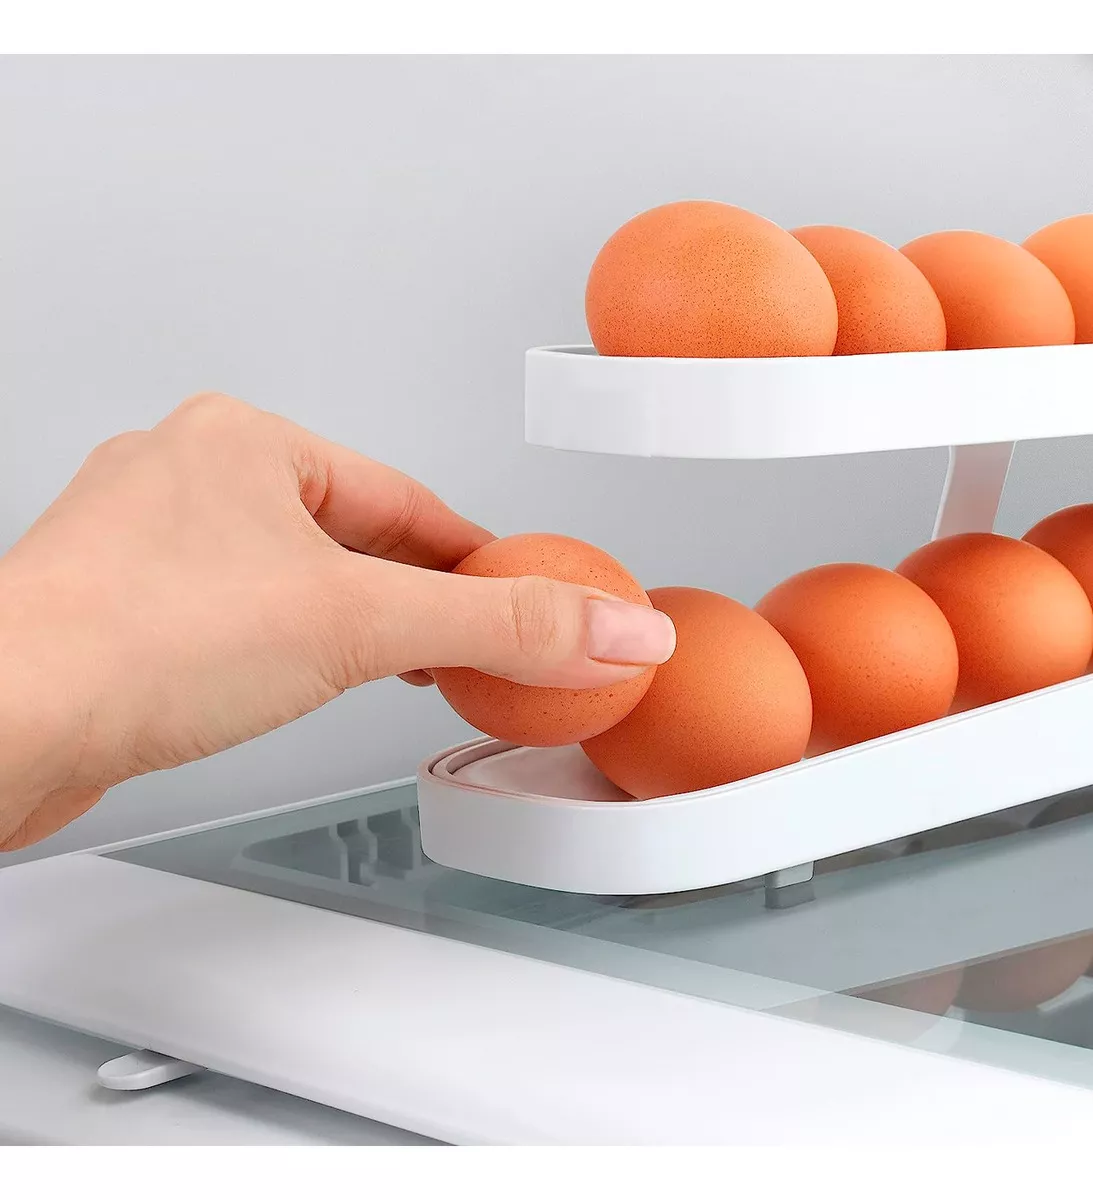 Tercera imagen para búsqueda de organizador de huevos